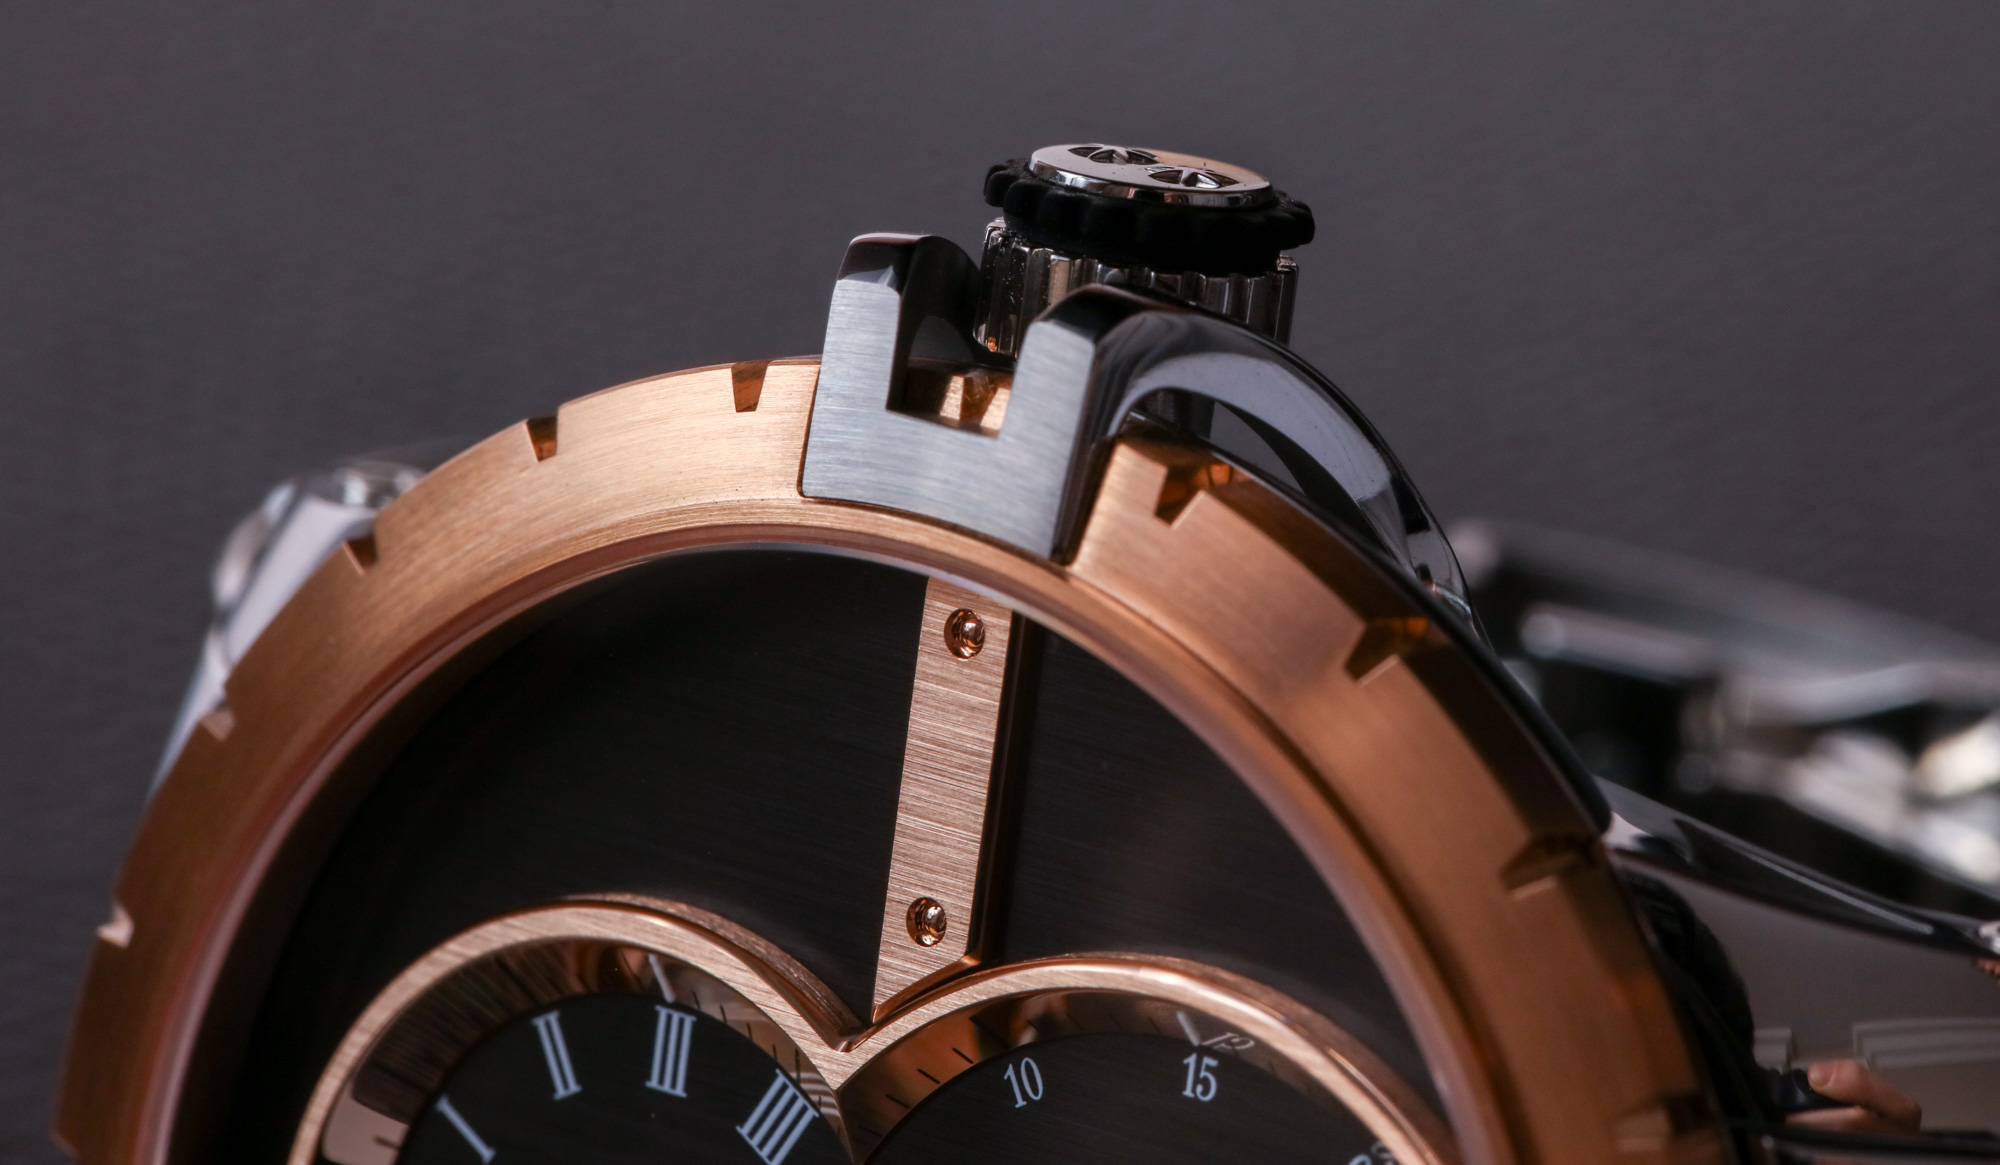 Больше не производится: часы Jaquet Droz SW Steel - розовое золото